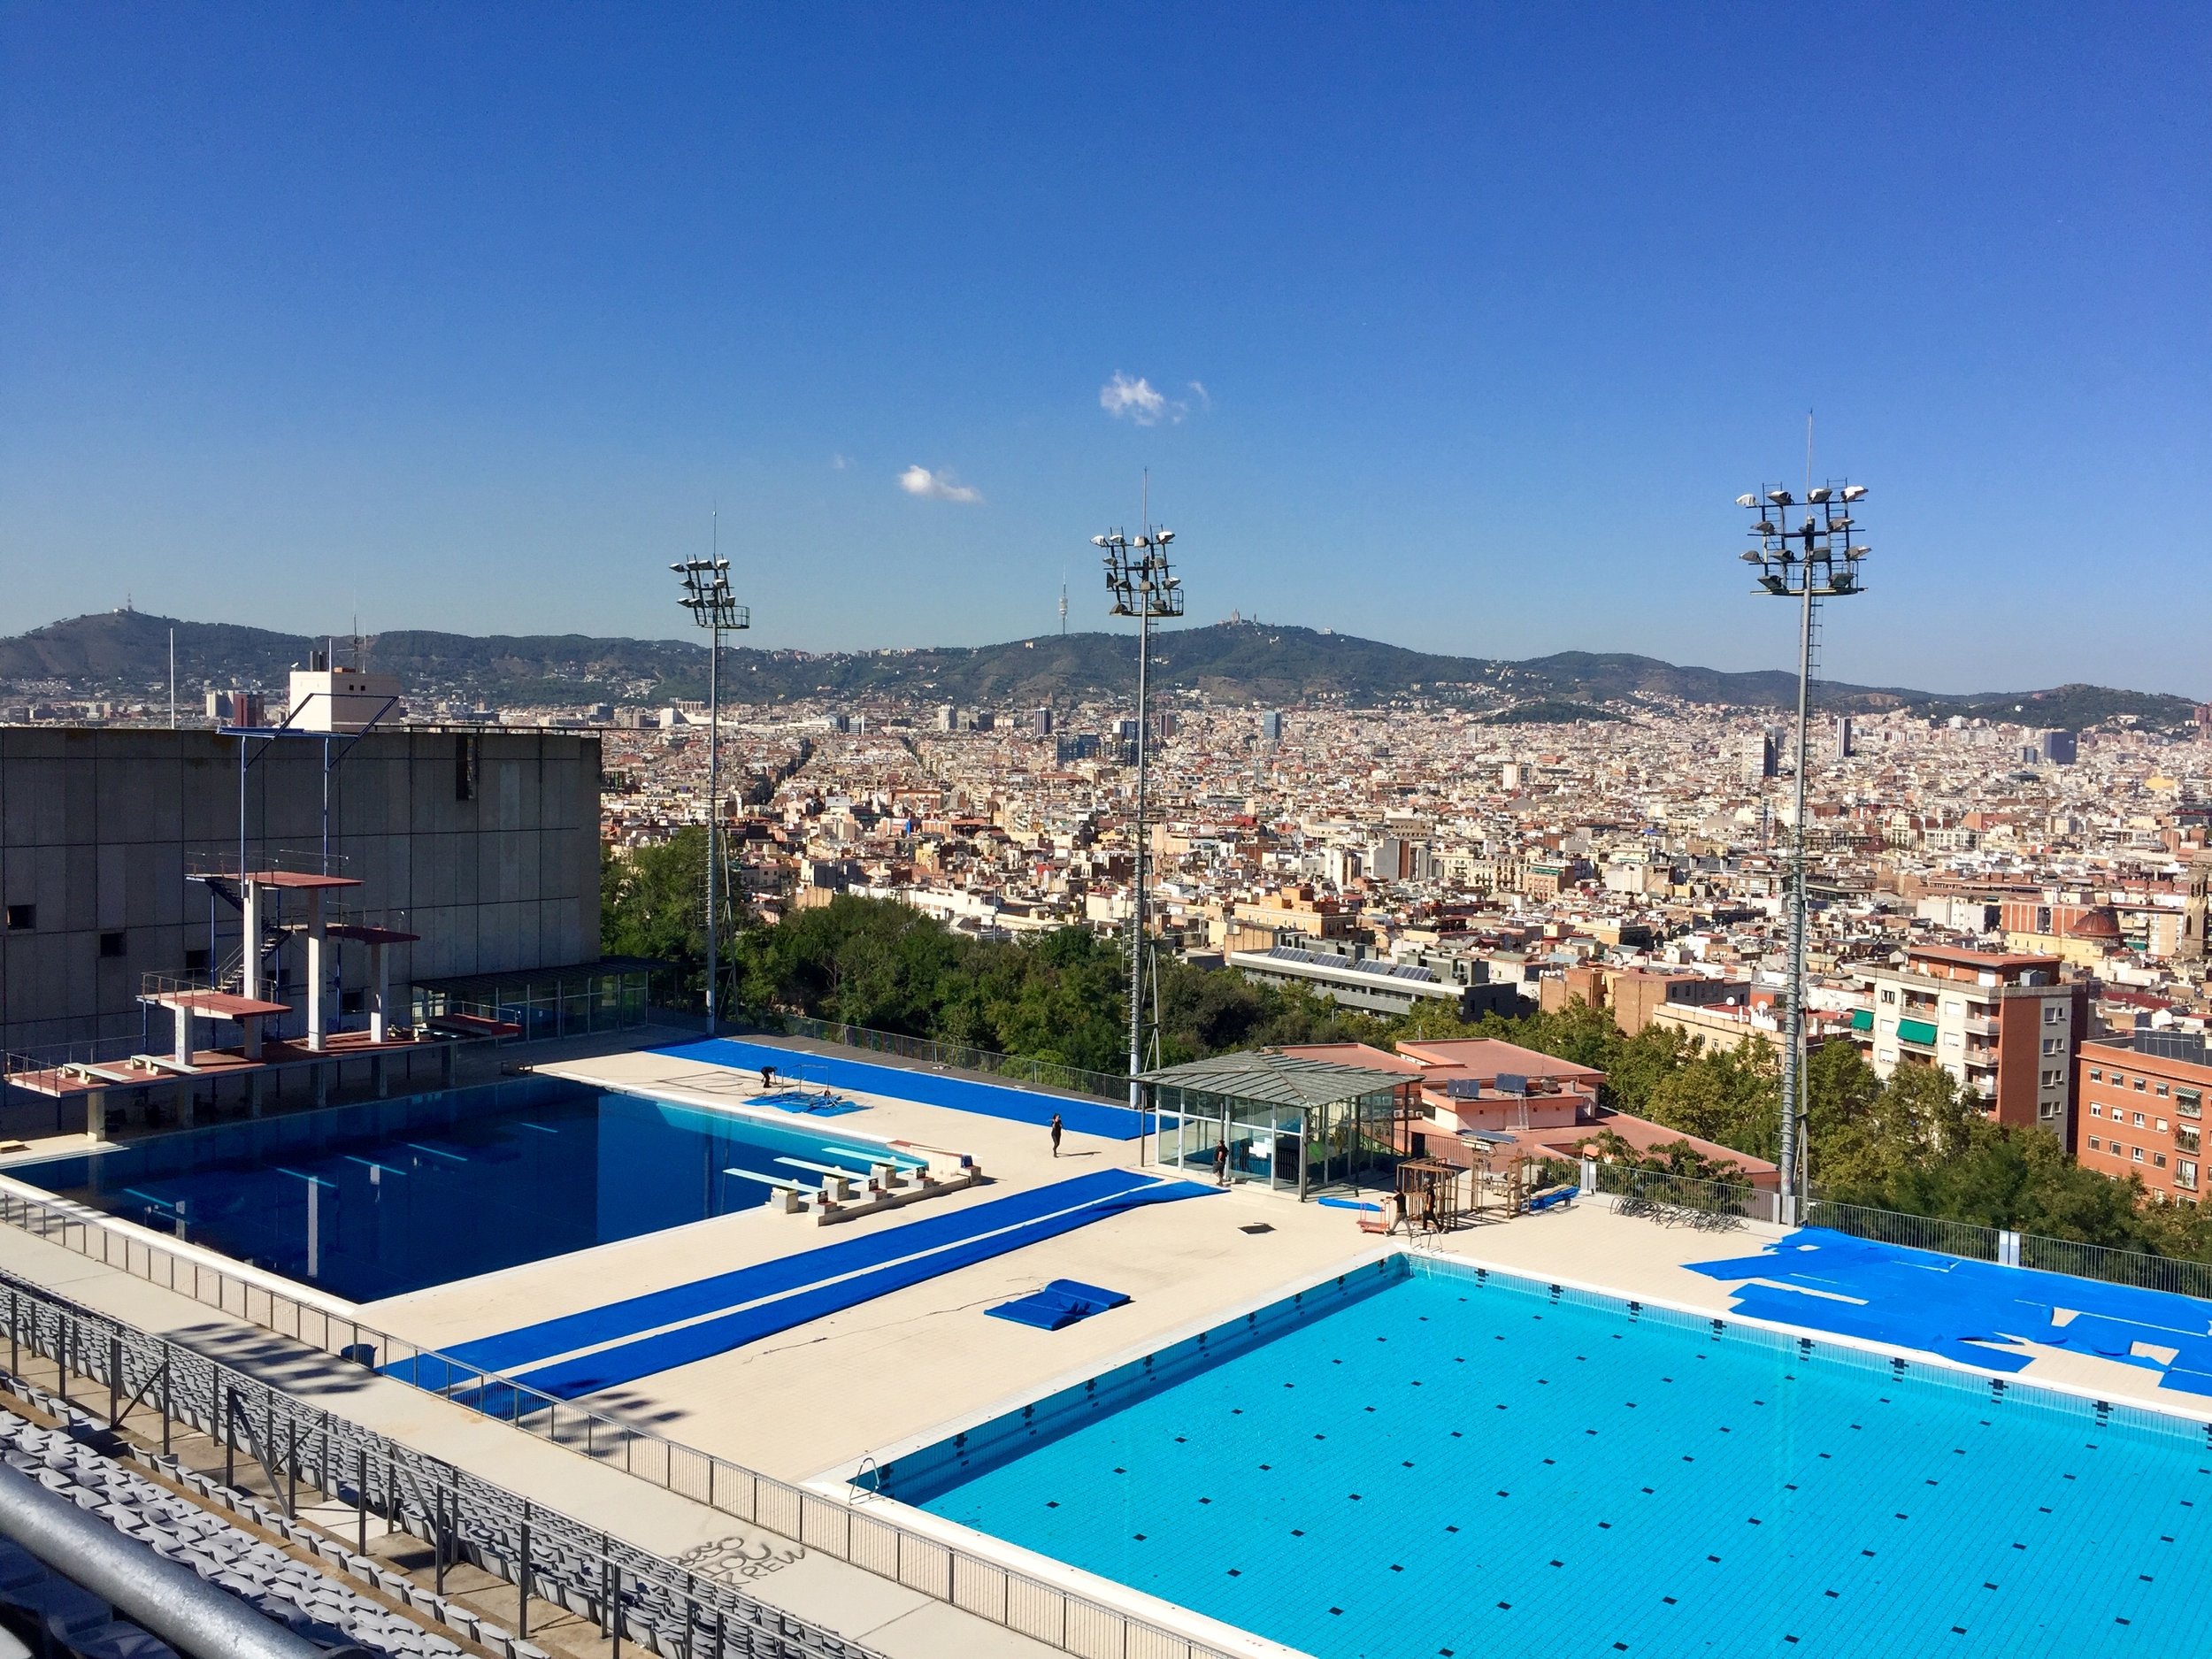 Barcelona Spain Olympic diving pool.jpg